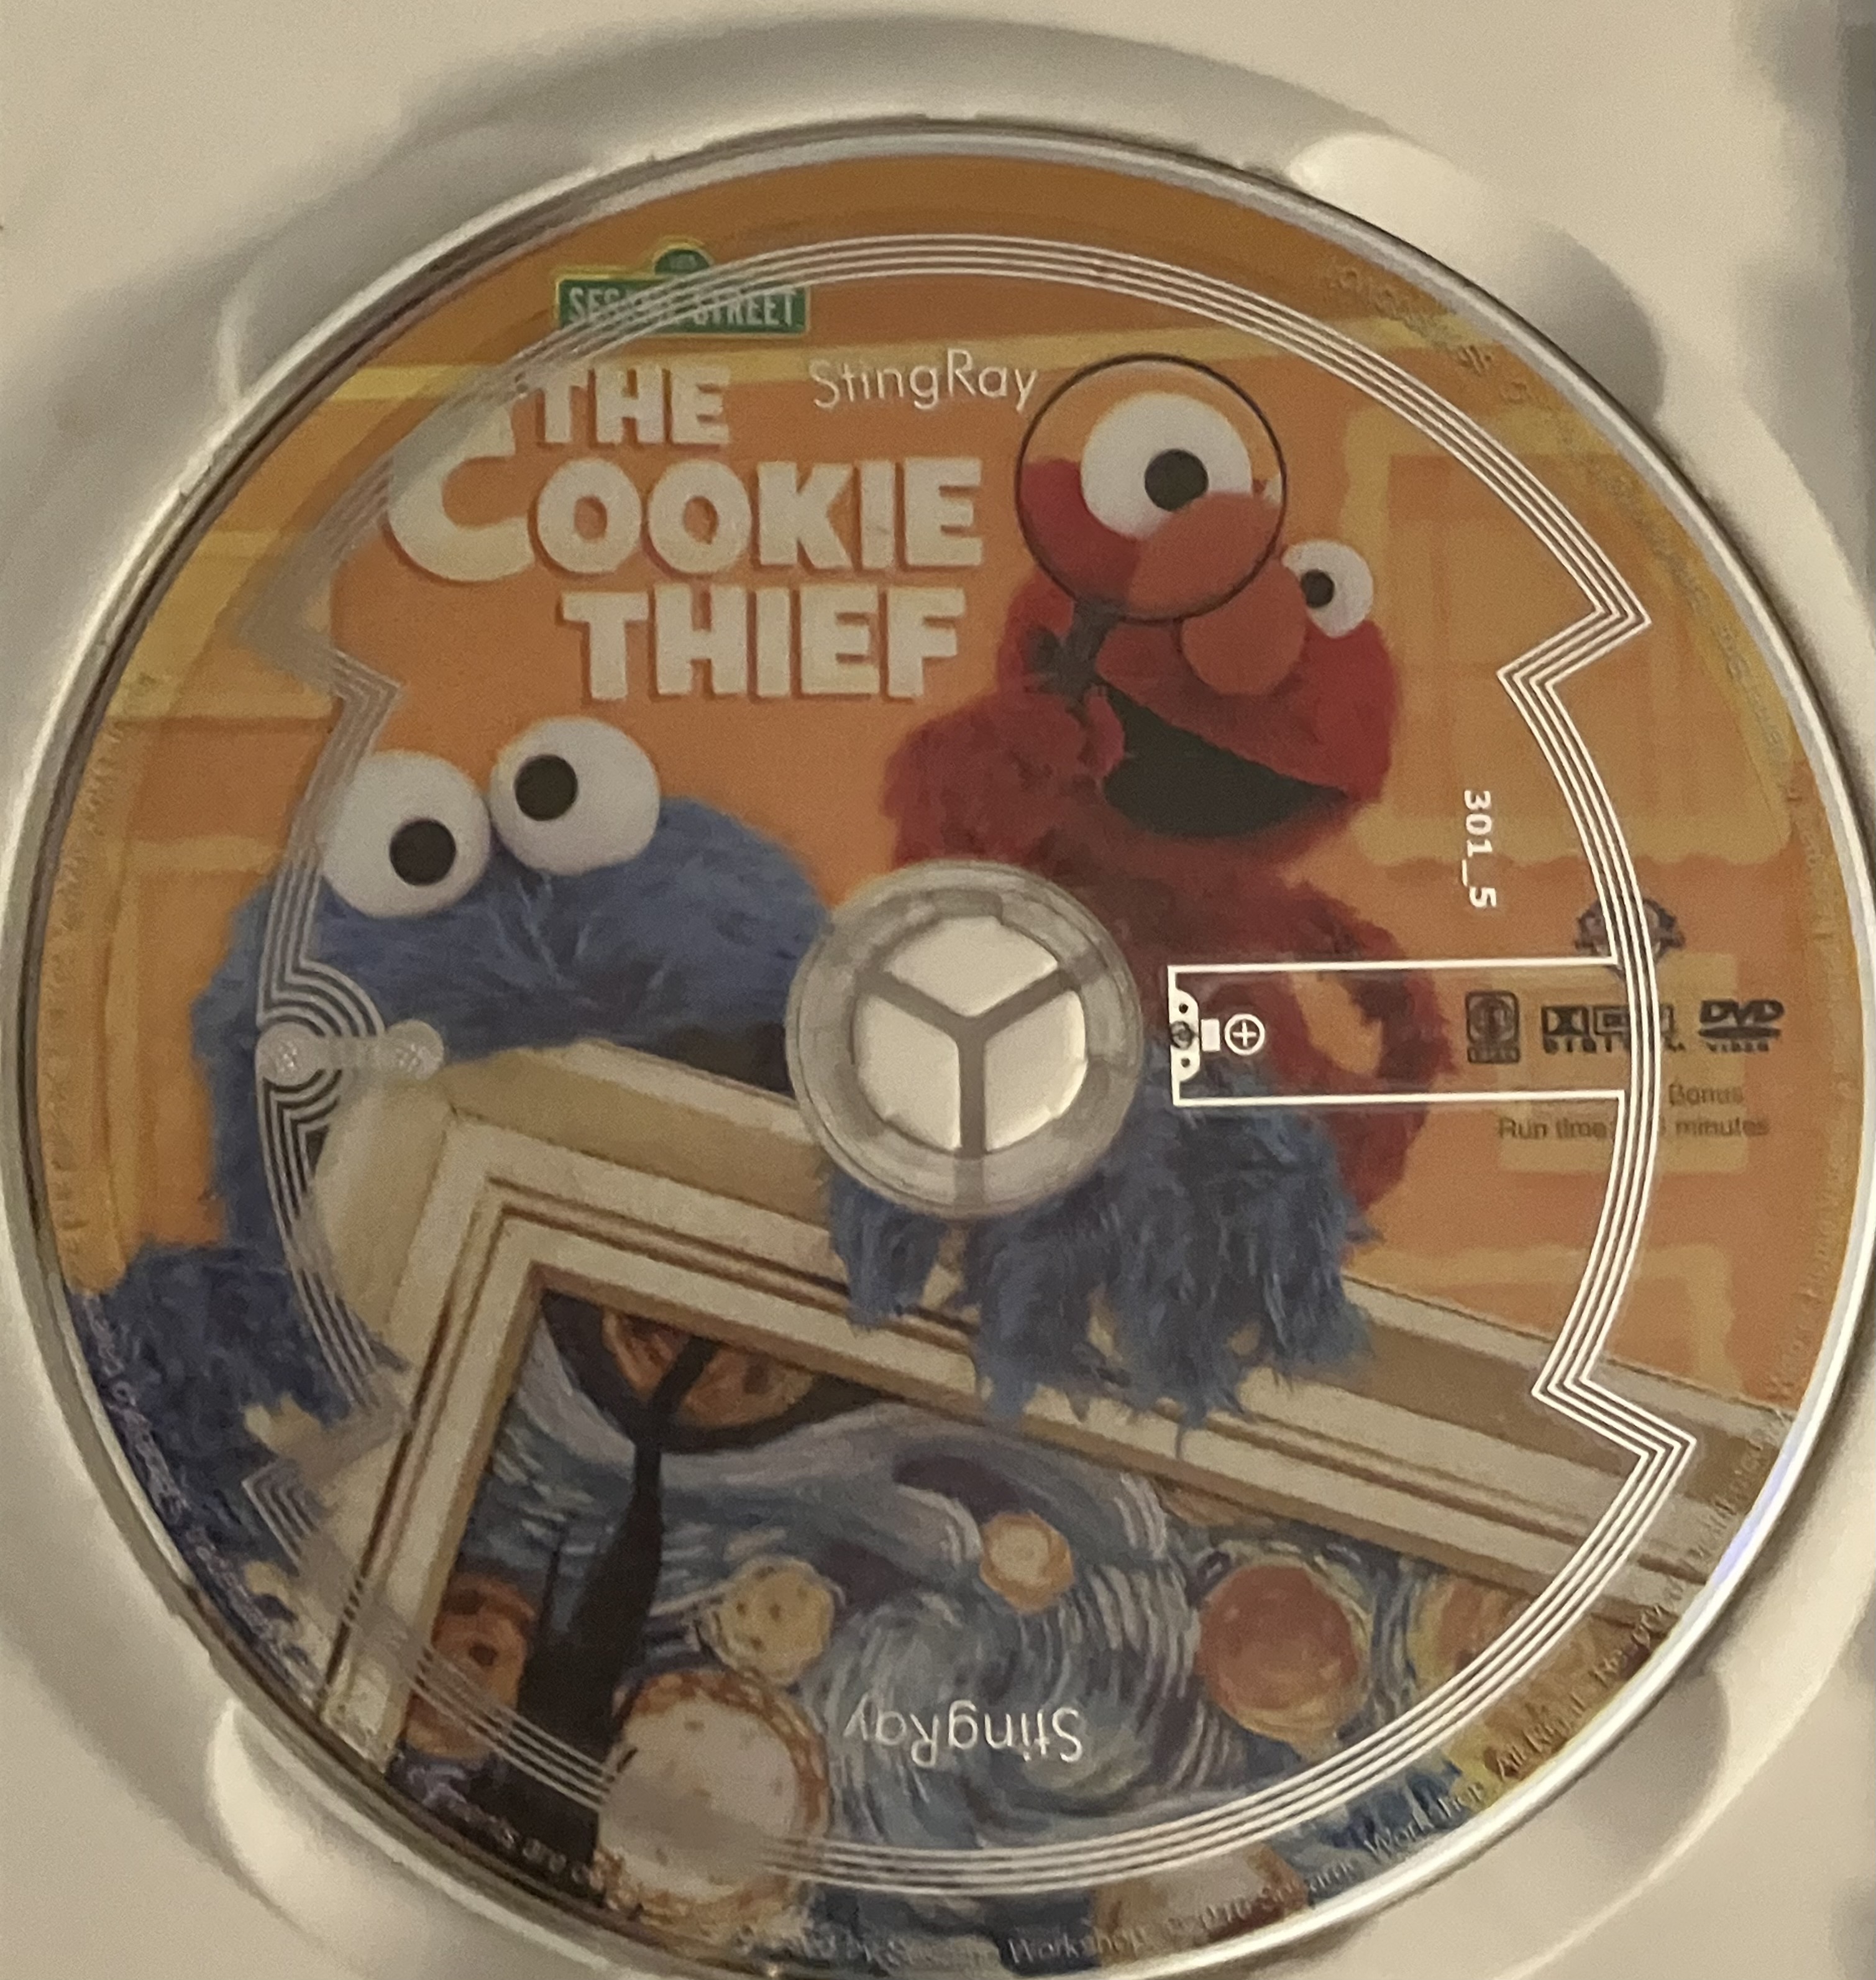 The Cookie Thief DVD Disc by ALEXLOVER366 on DeviantArt